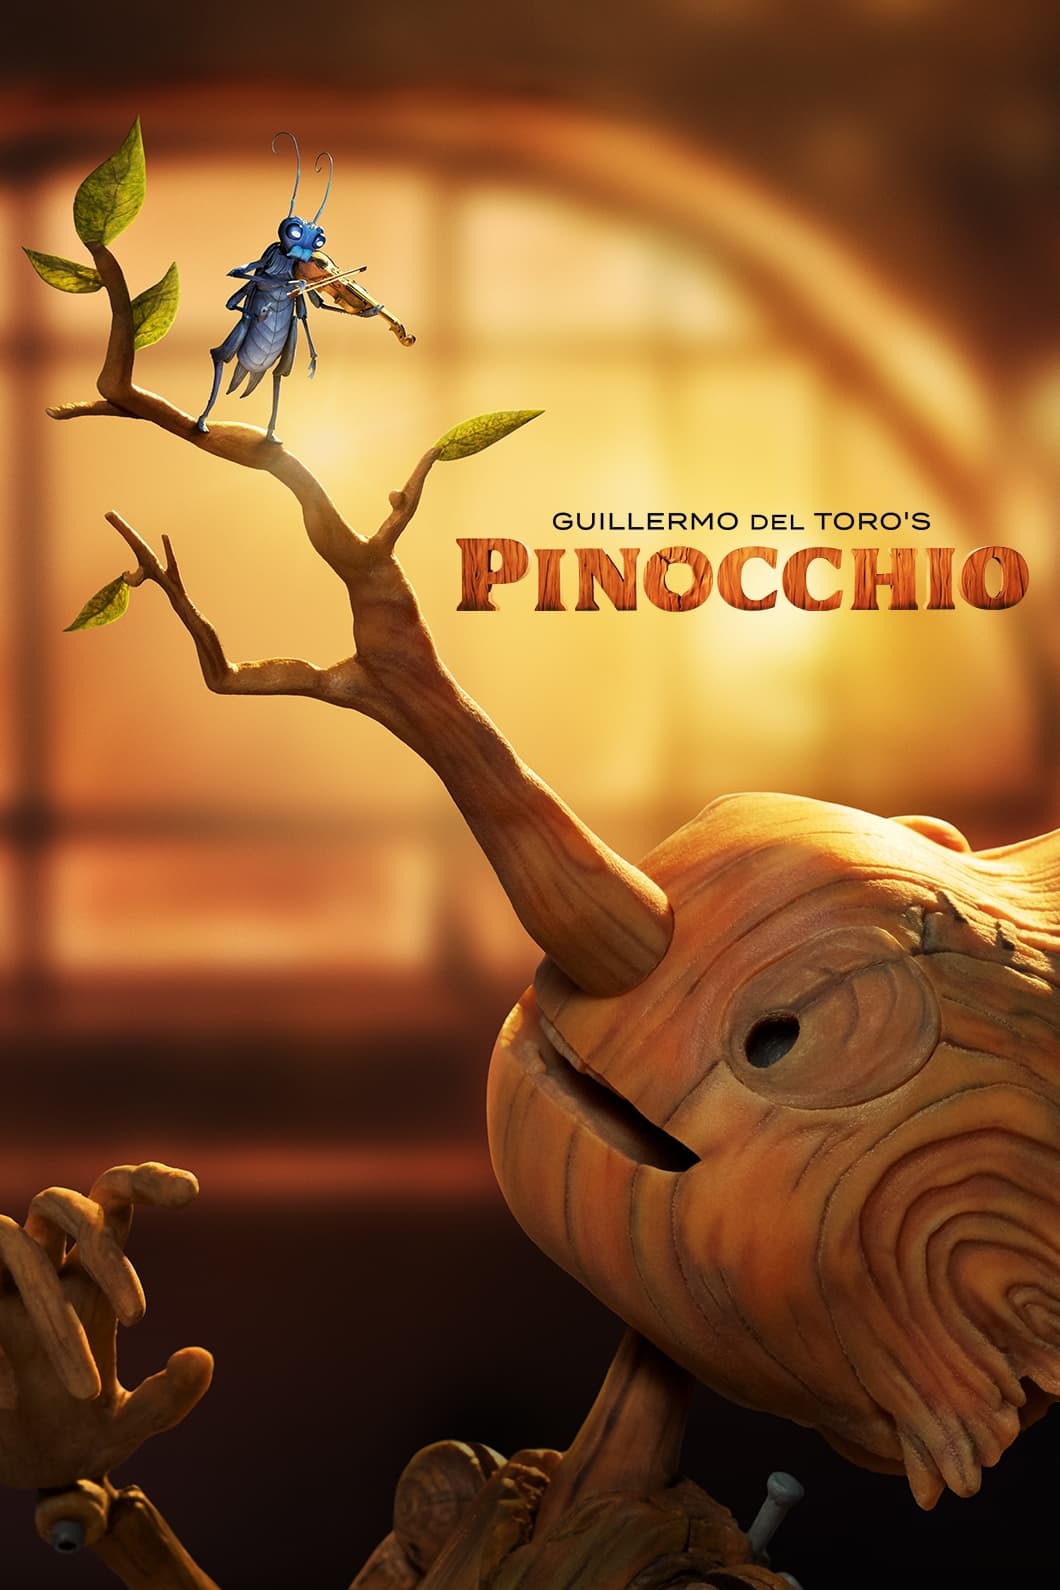 Guillermo del Toro's Pinocchio Movie poster